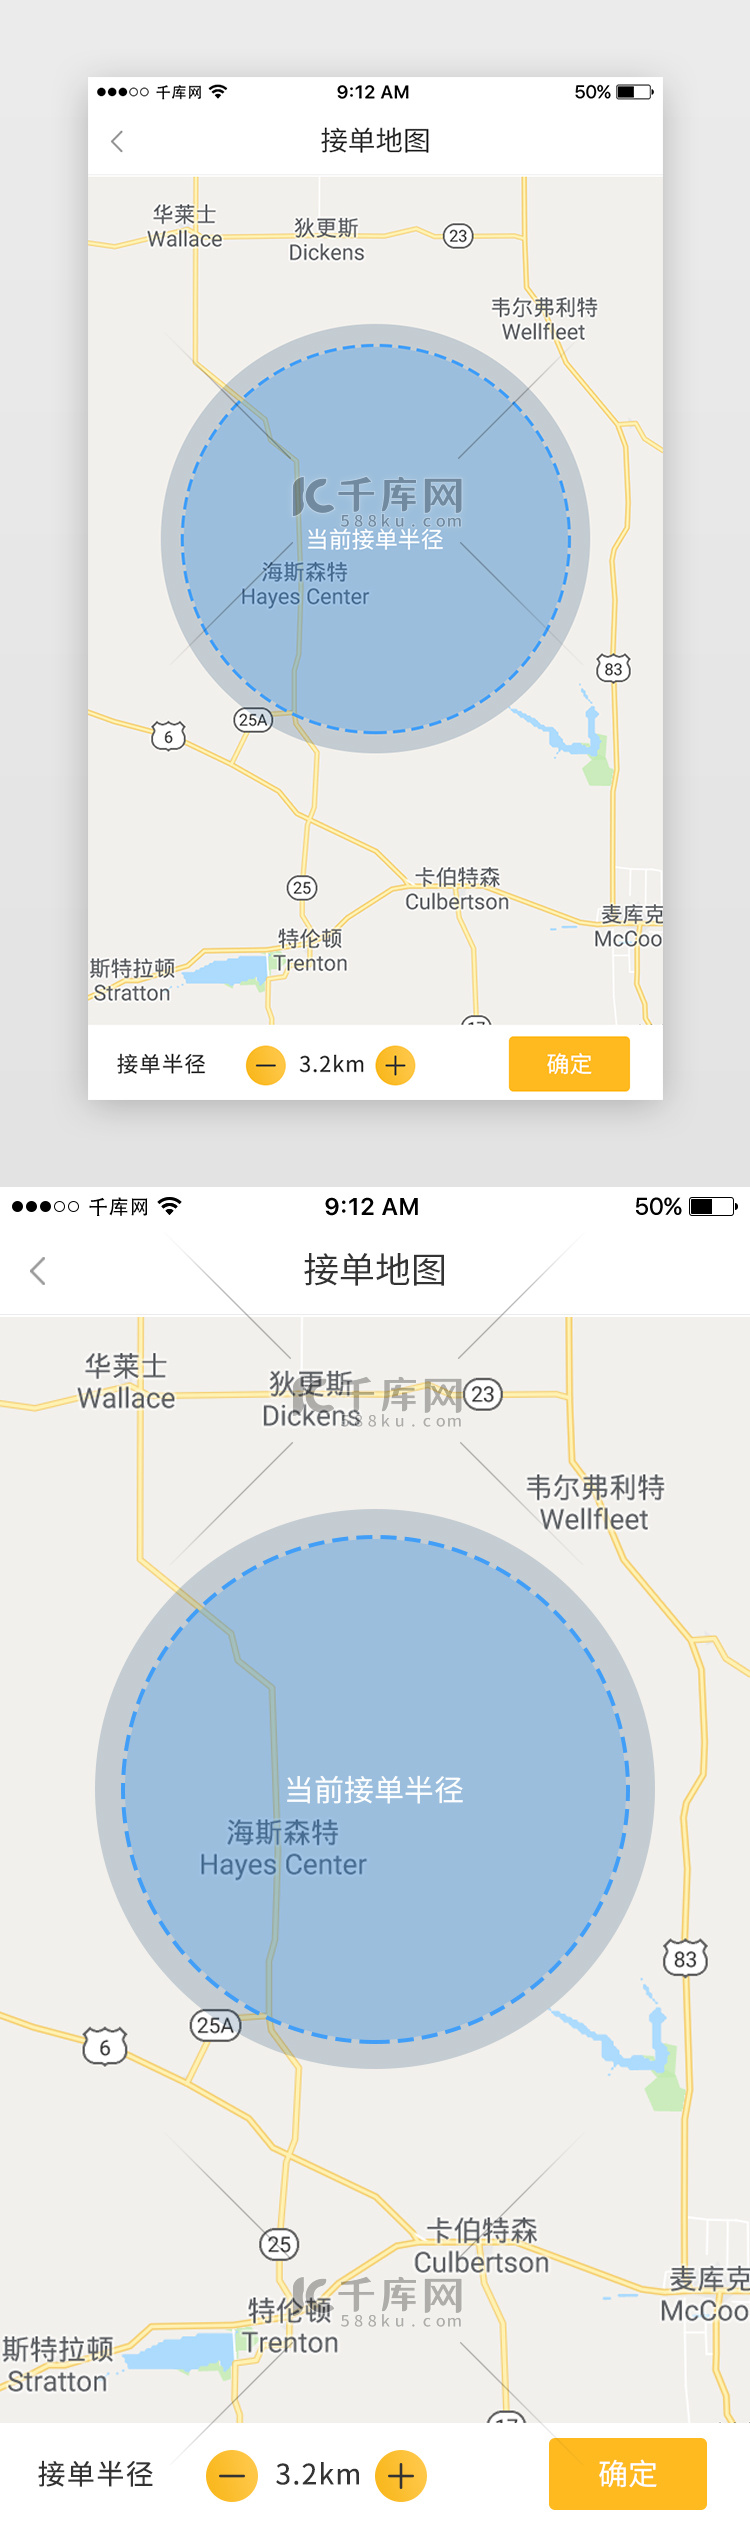 黄色美食外卖配送员端App接单地图页导航